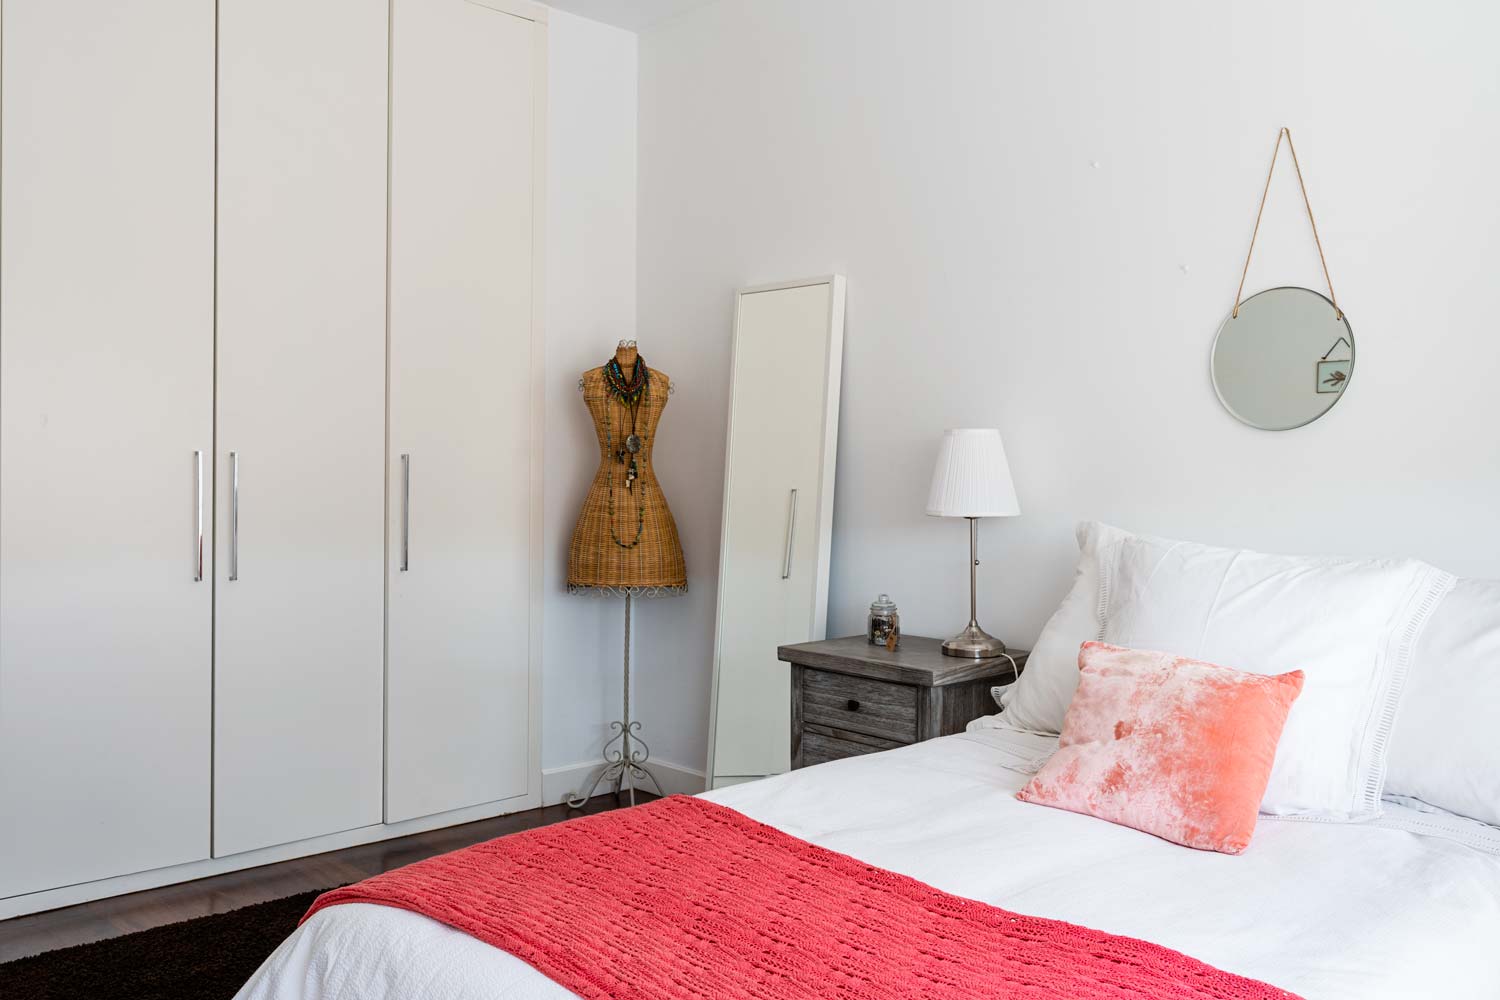 Dormitorio doble con armario empotrado y maniquí de mimbre_ Sobre la cama hay textiles en coral y blanco_ unifamiliar Oleiros